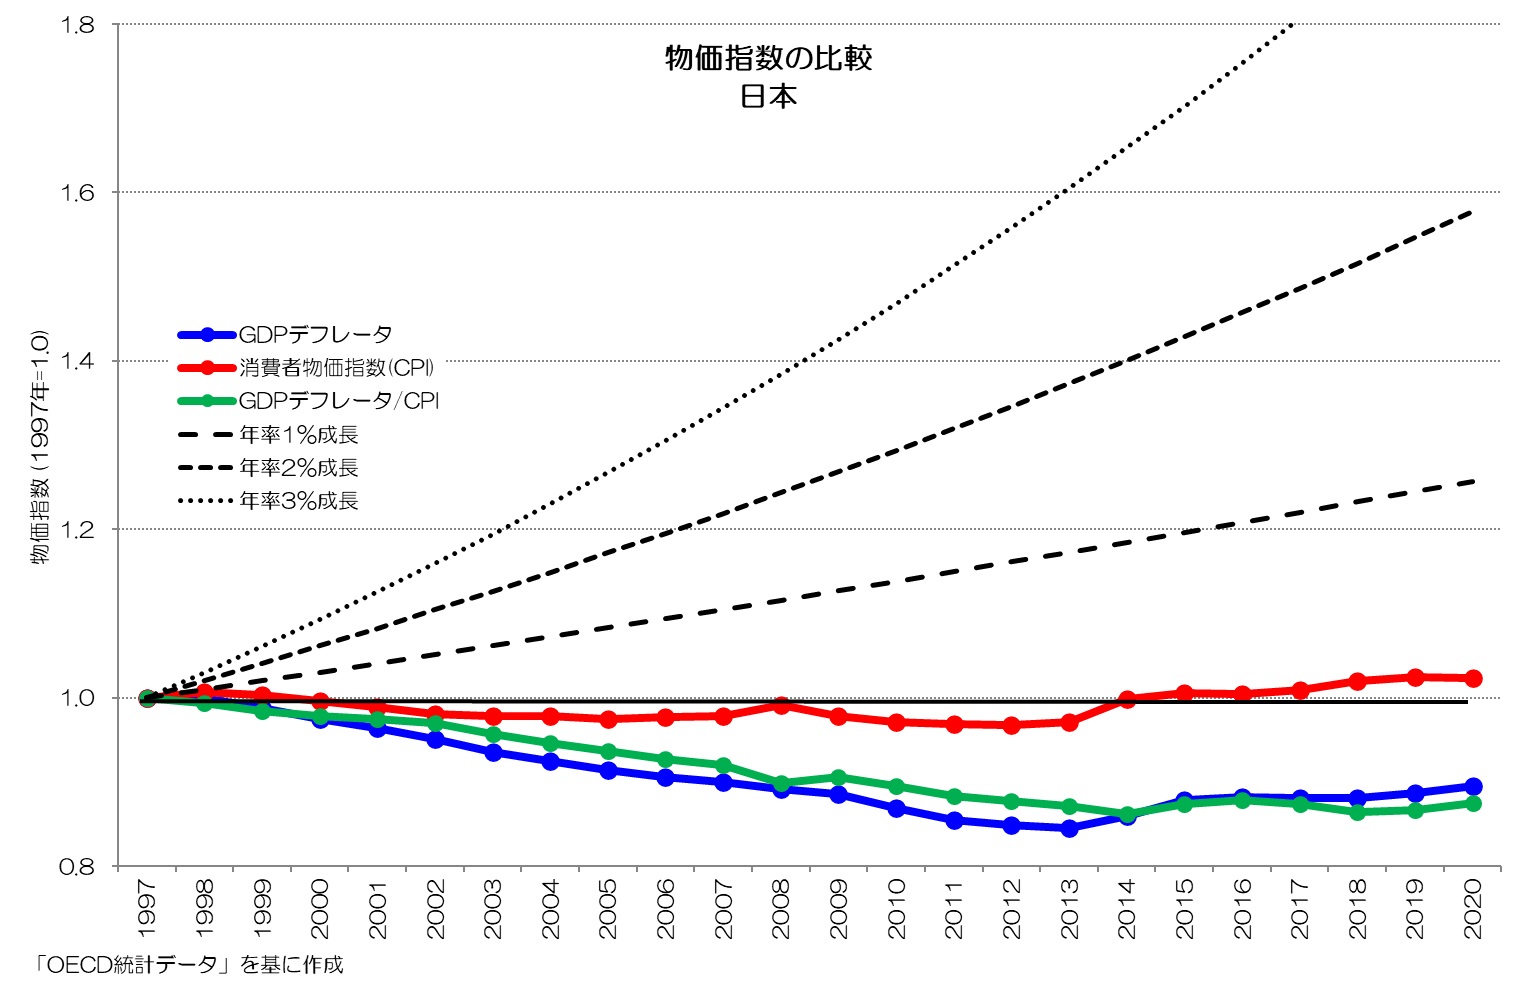 物価指数の比較 1997年基準 日本2